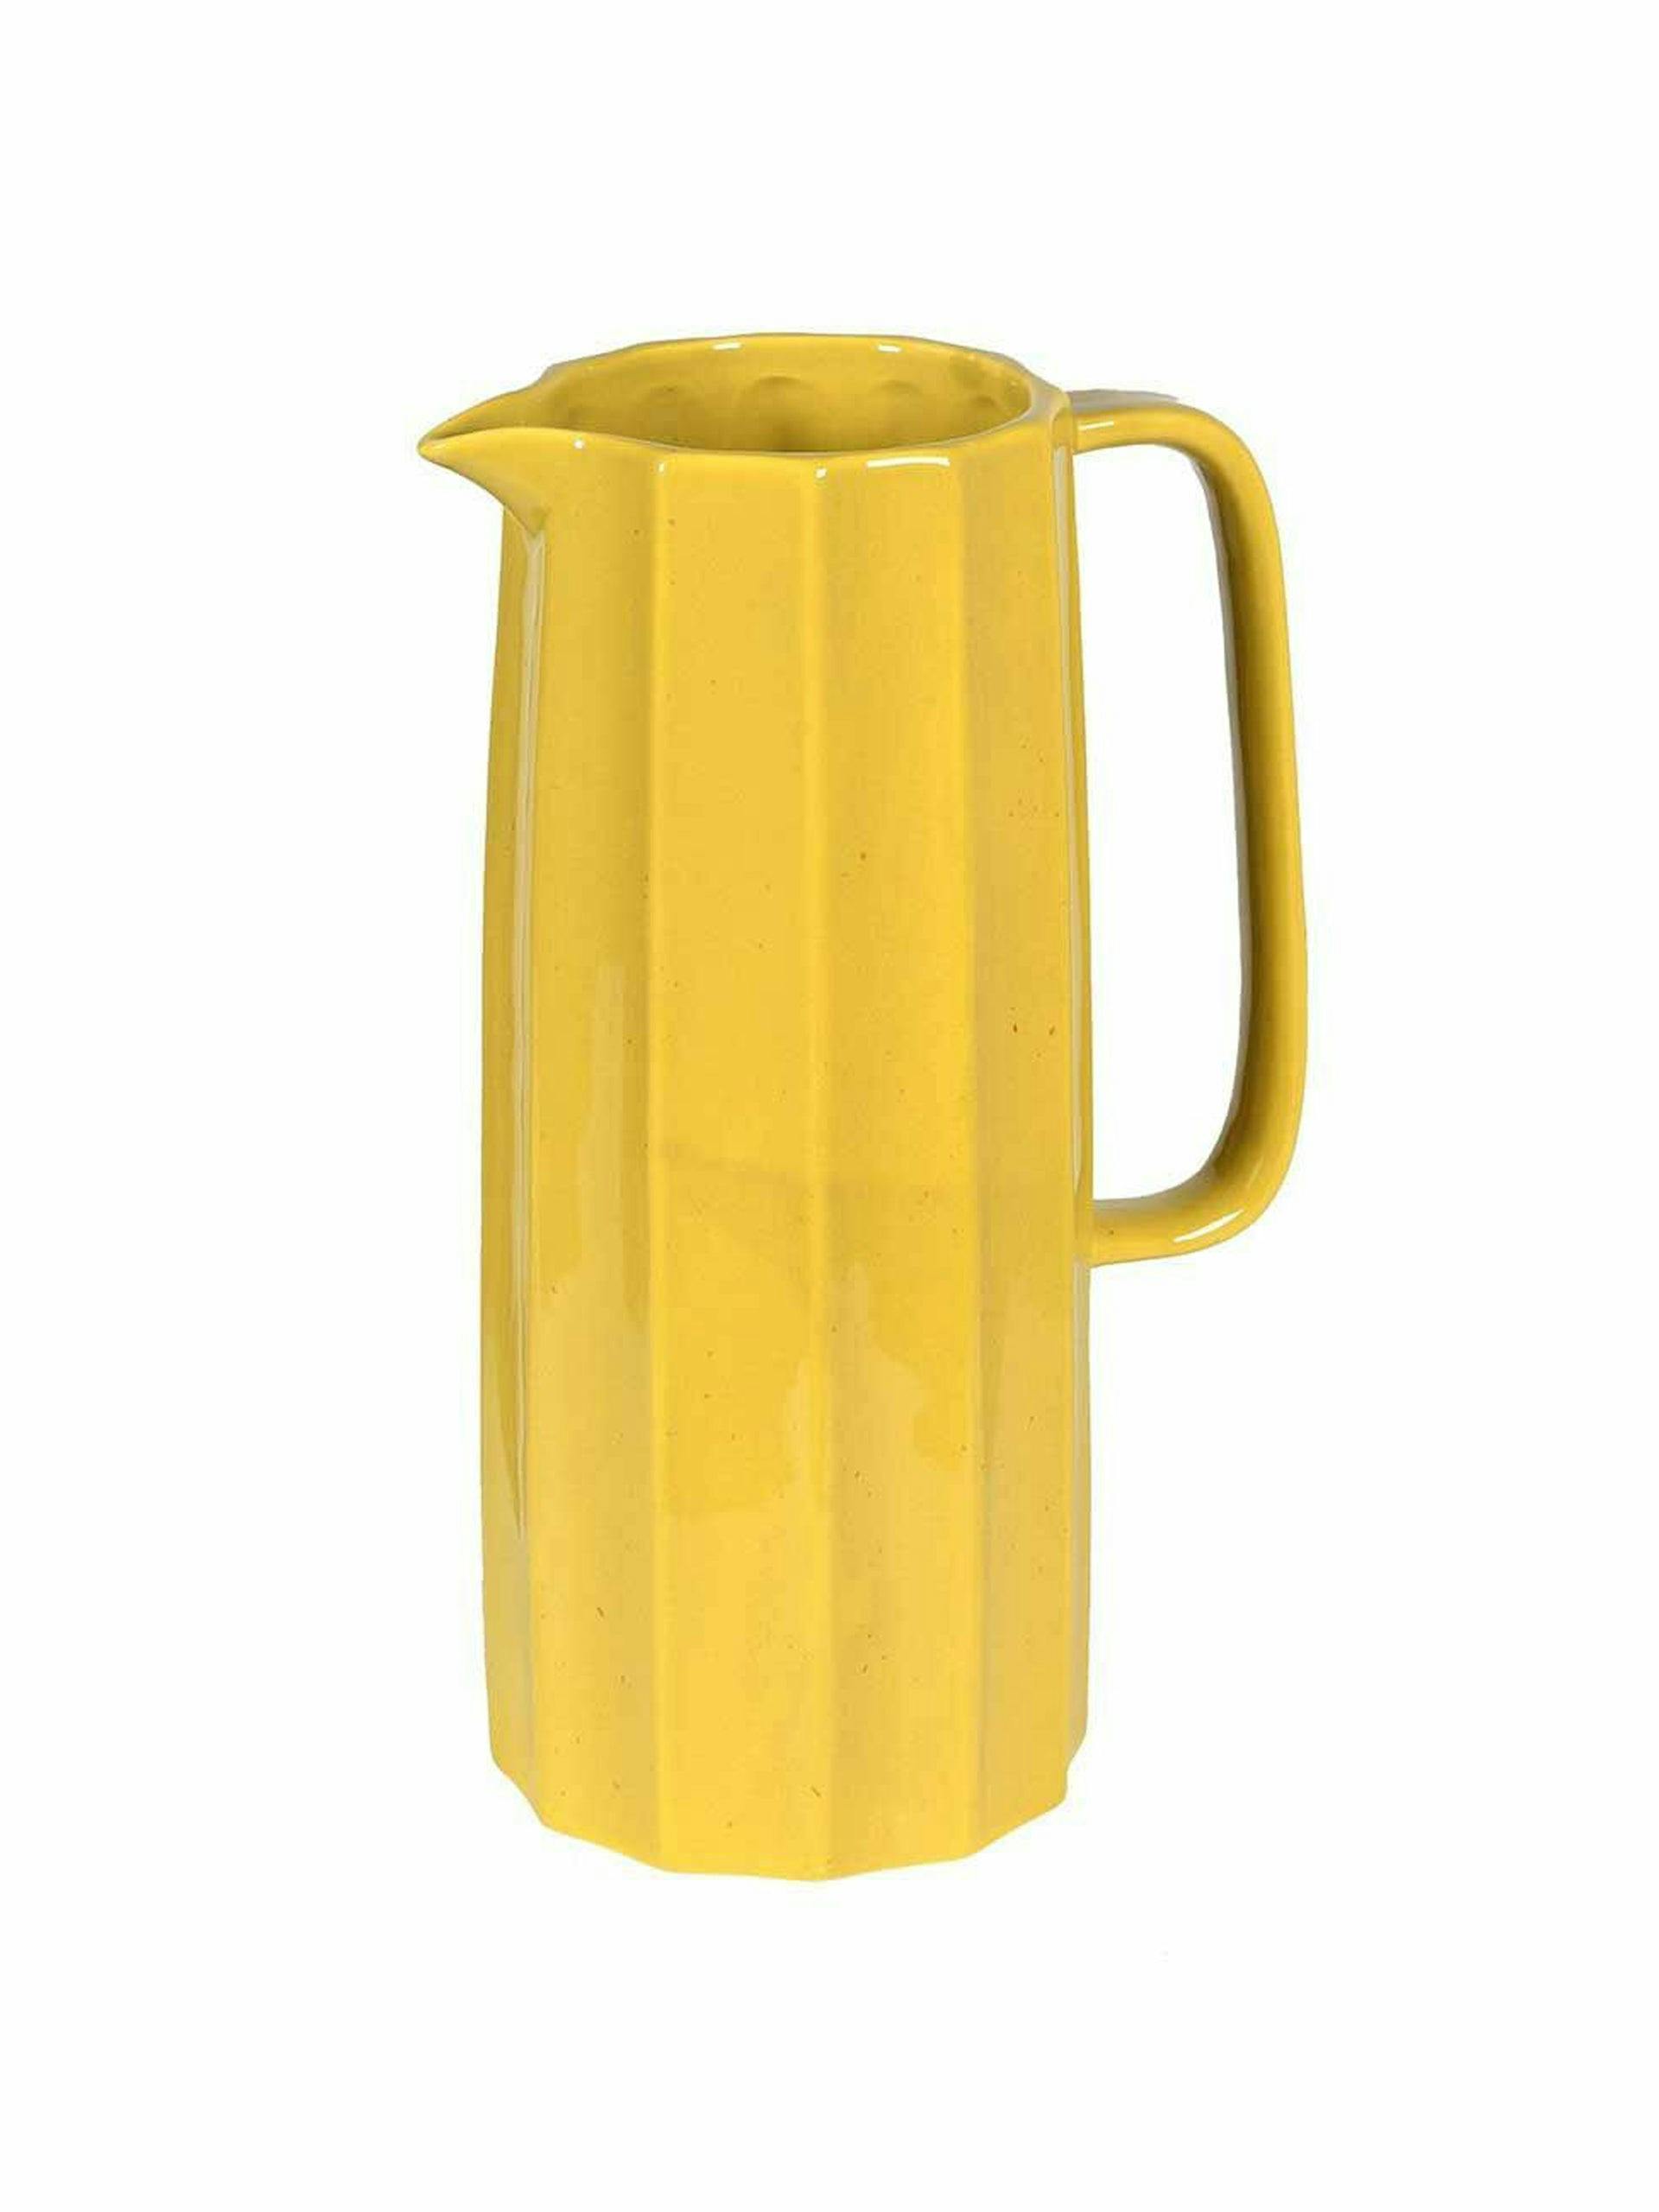 Yellow ceramic jug